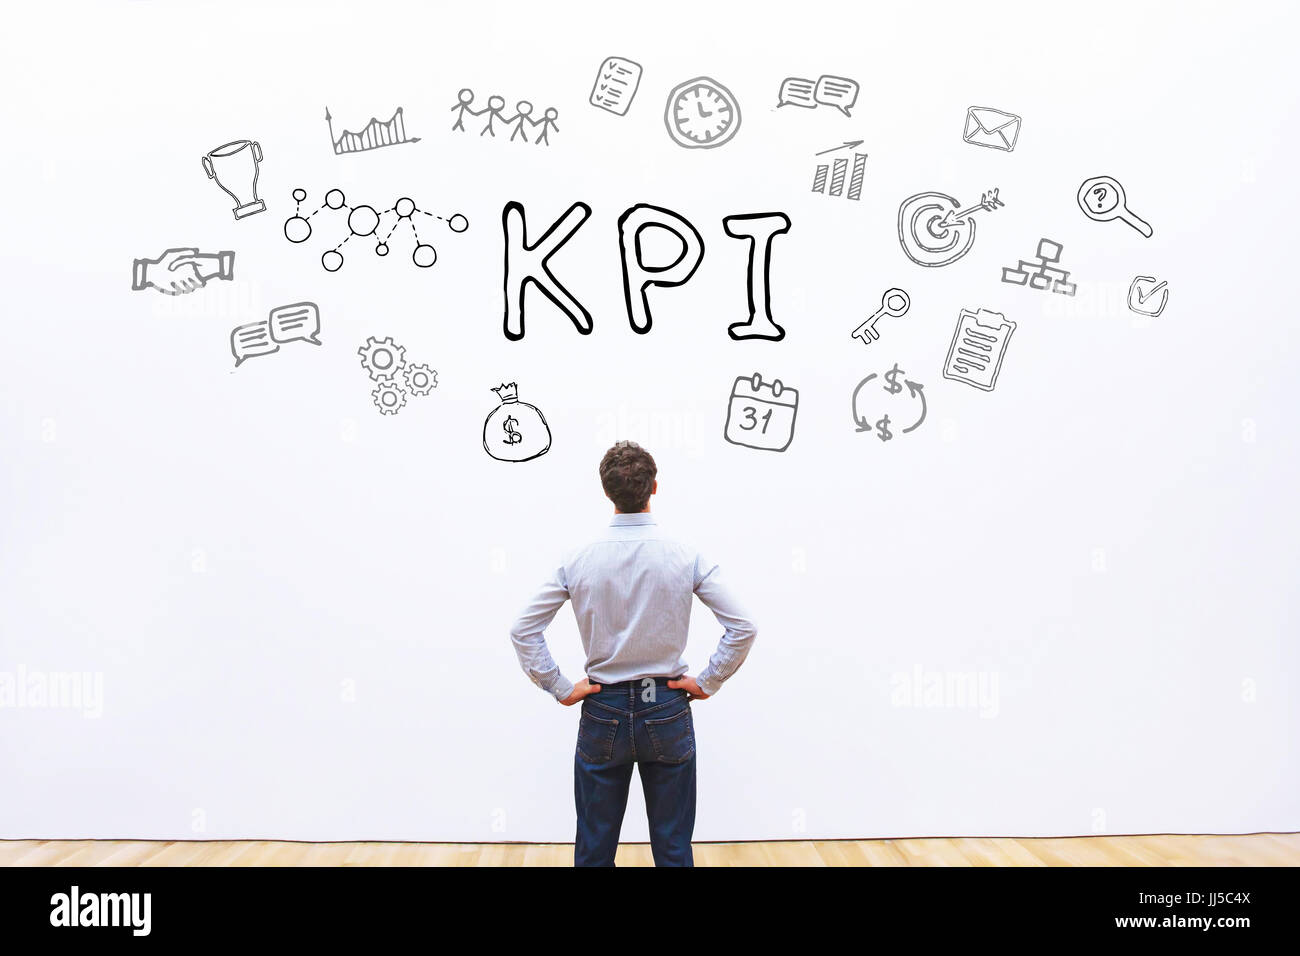 KPI concept, key performance indicator Stock Photo